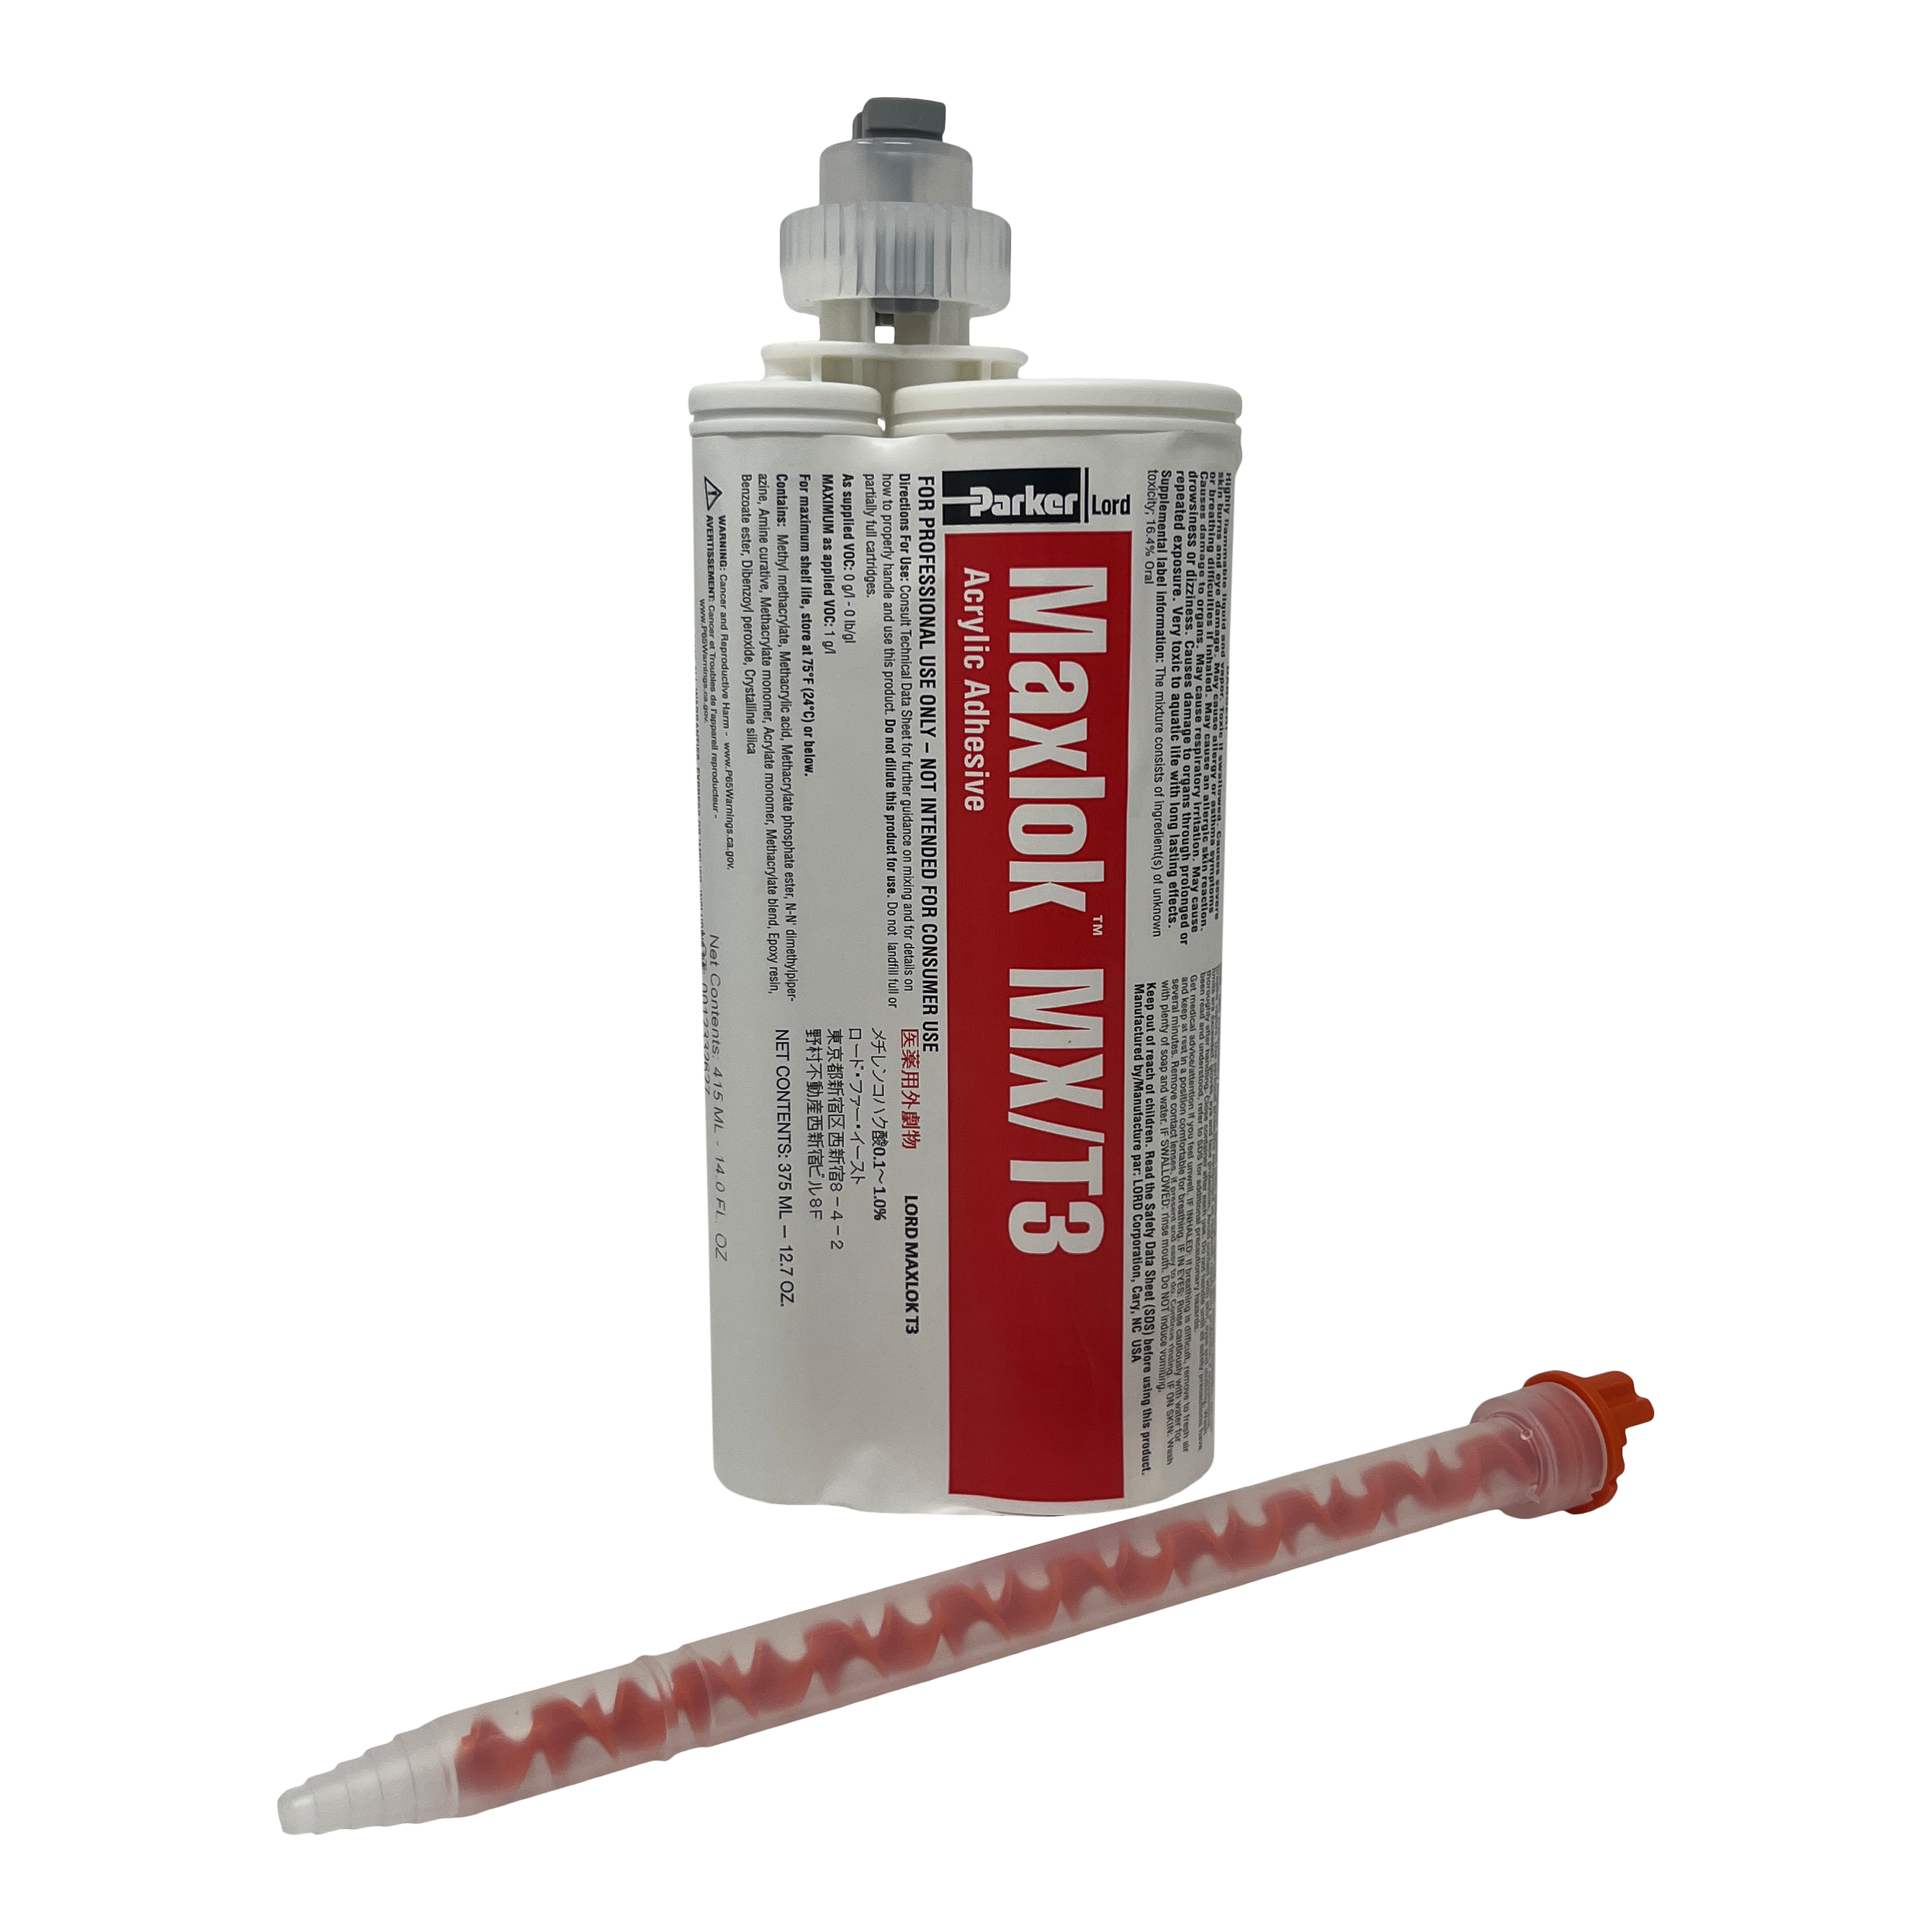 PERMATEX Super Glue-3 Cyanoacrylate Glue System 2 g/Case of 12